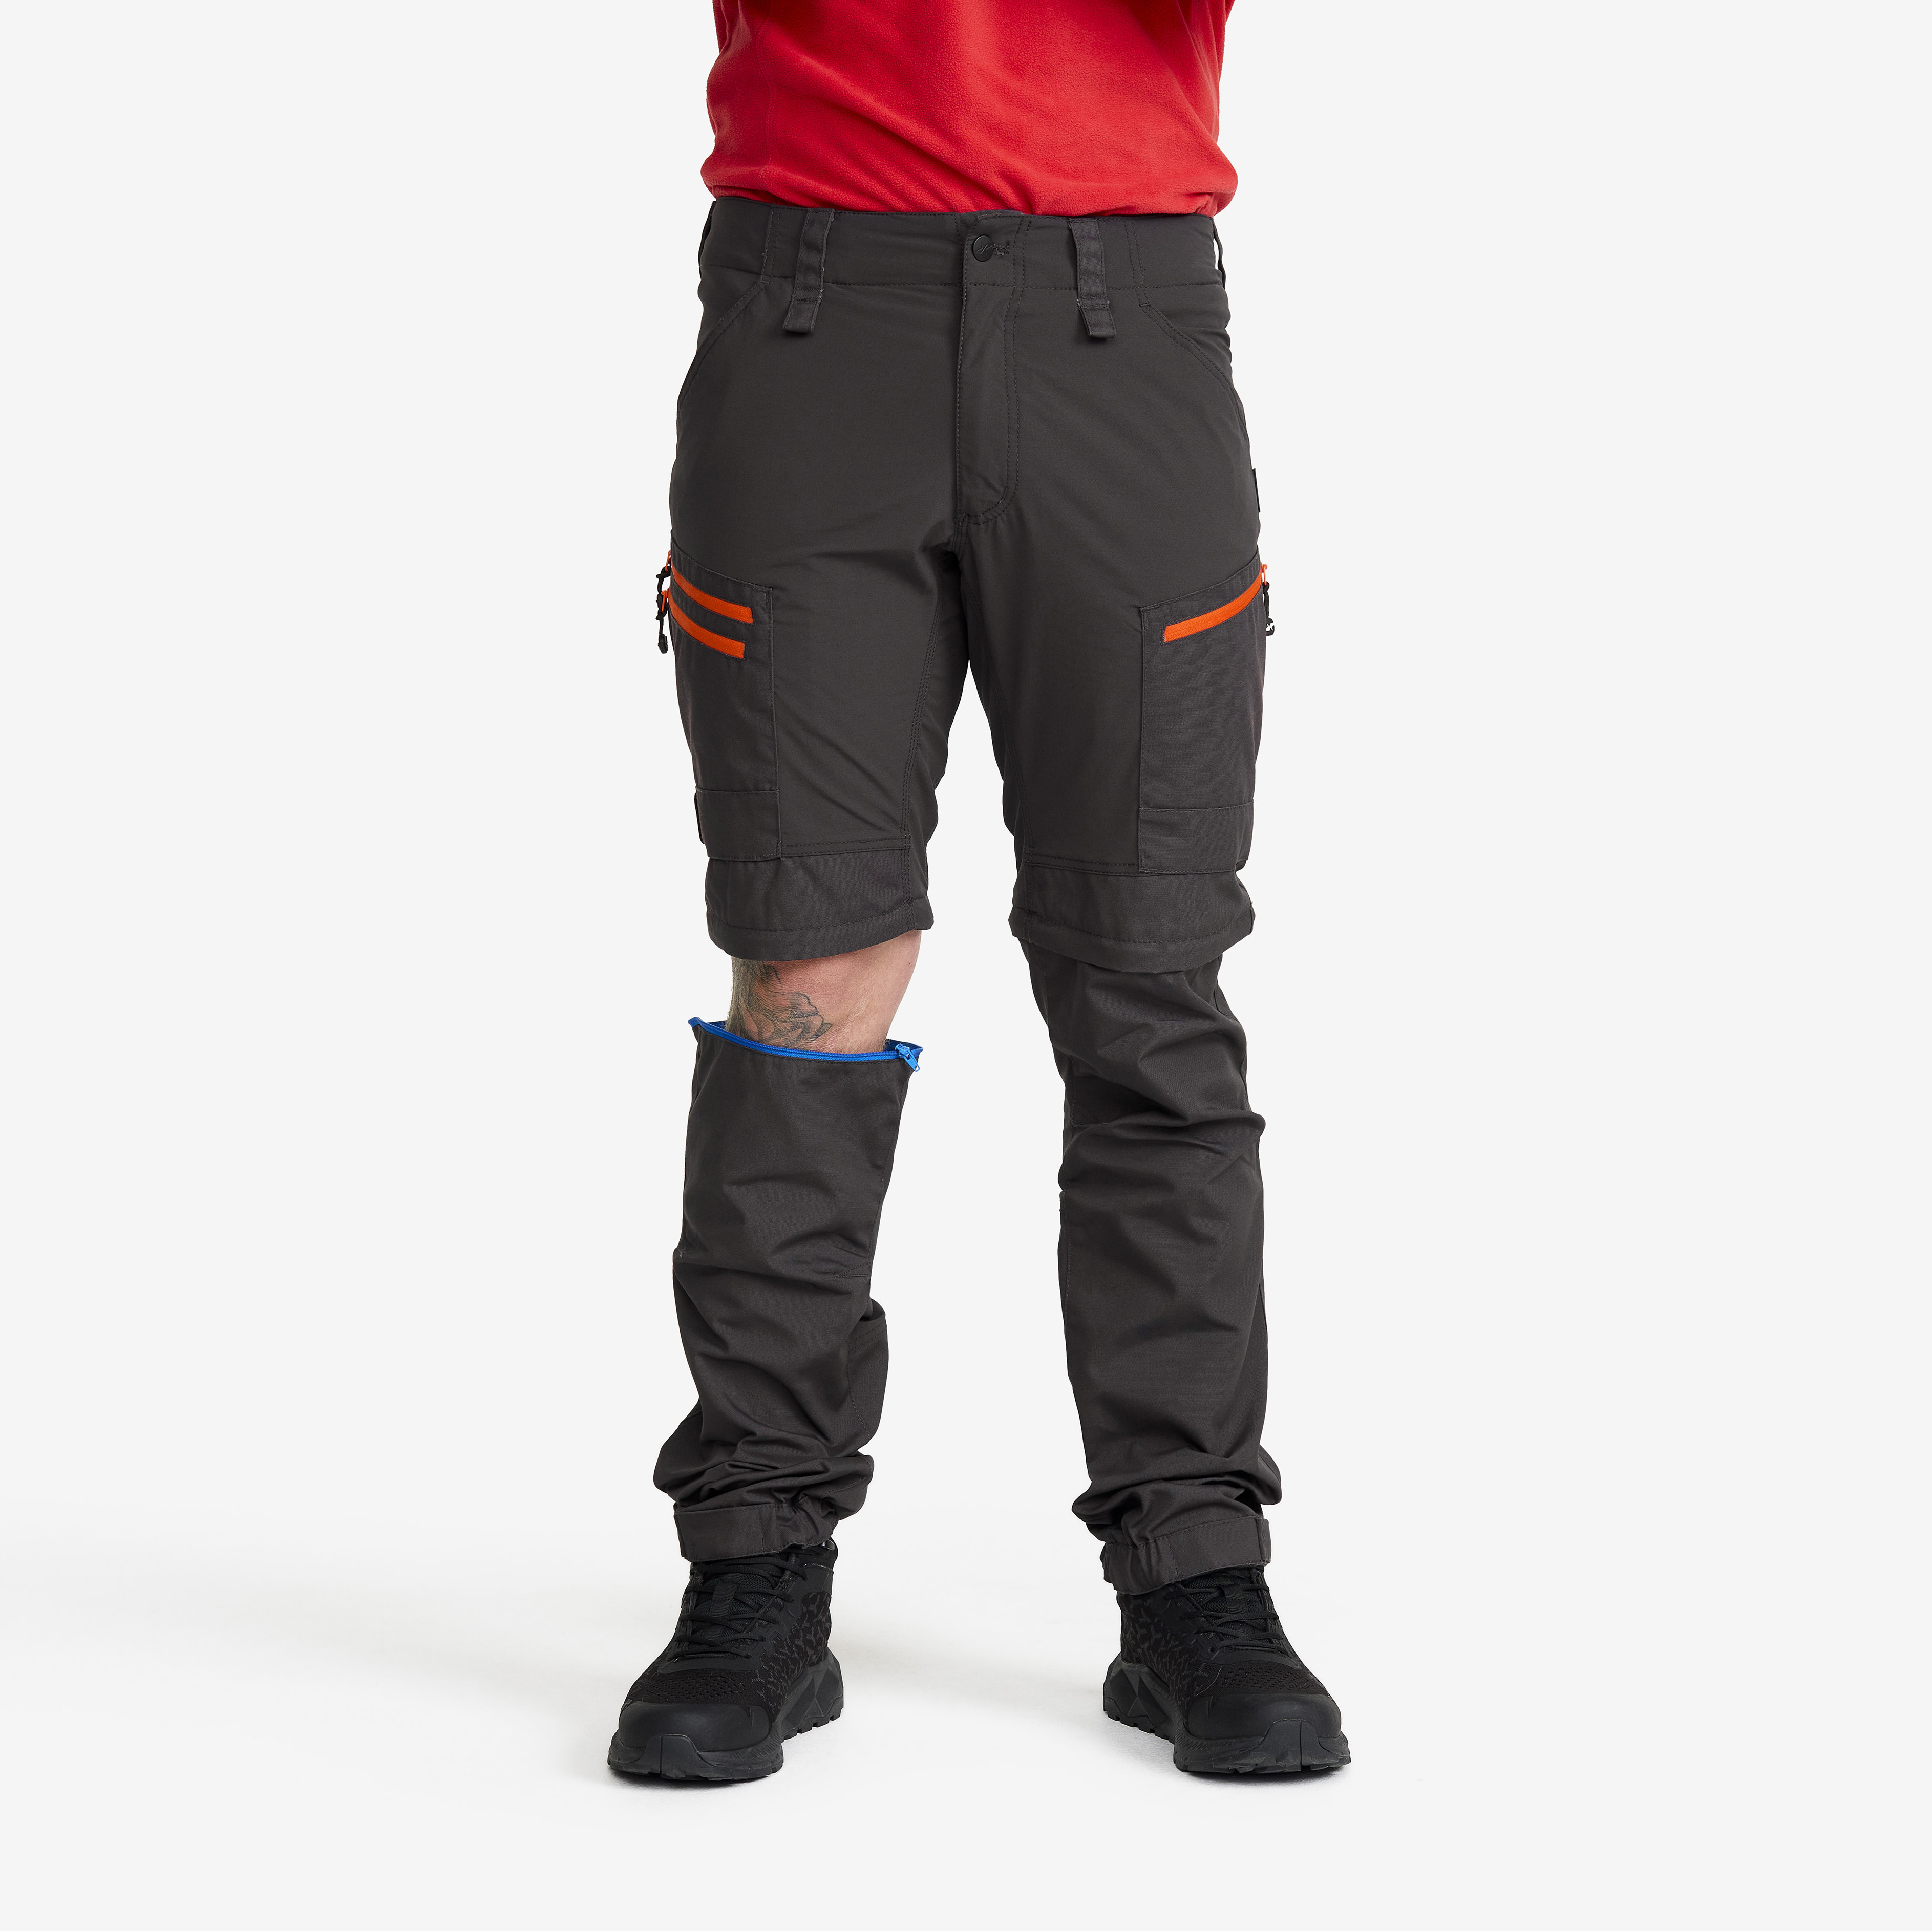 RVRC GP Pro Zip-off hiking pants for men in dark grey